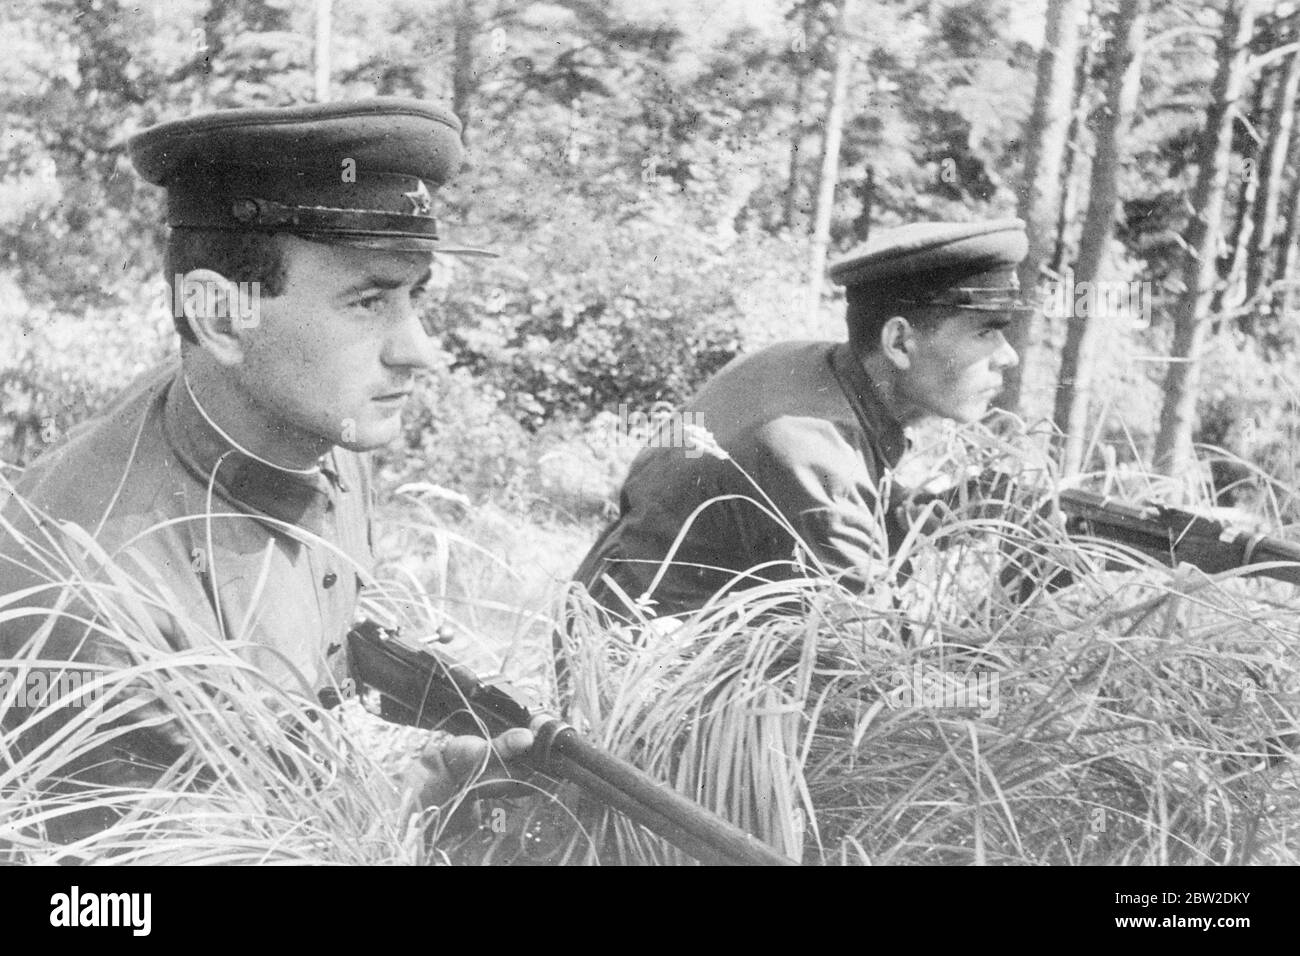 Jóvenes guardias de la frontera soviética, ojos muy atentos y rifles listos, mantener un control sombrío en las fronteras de Ucrania - el objetivo final de Hitler. 16 de octubre de 1938 Foto de stock